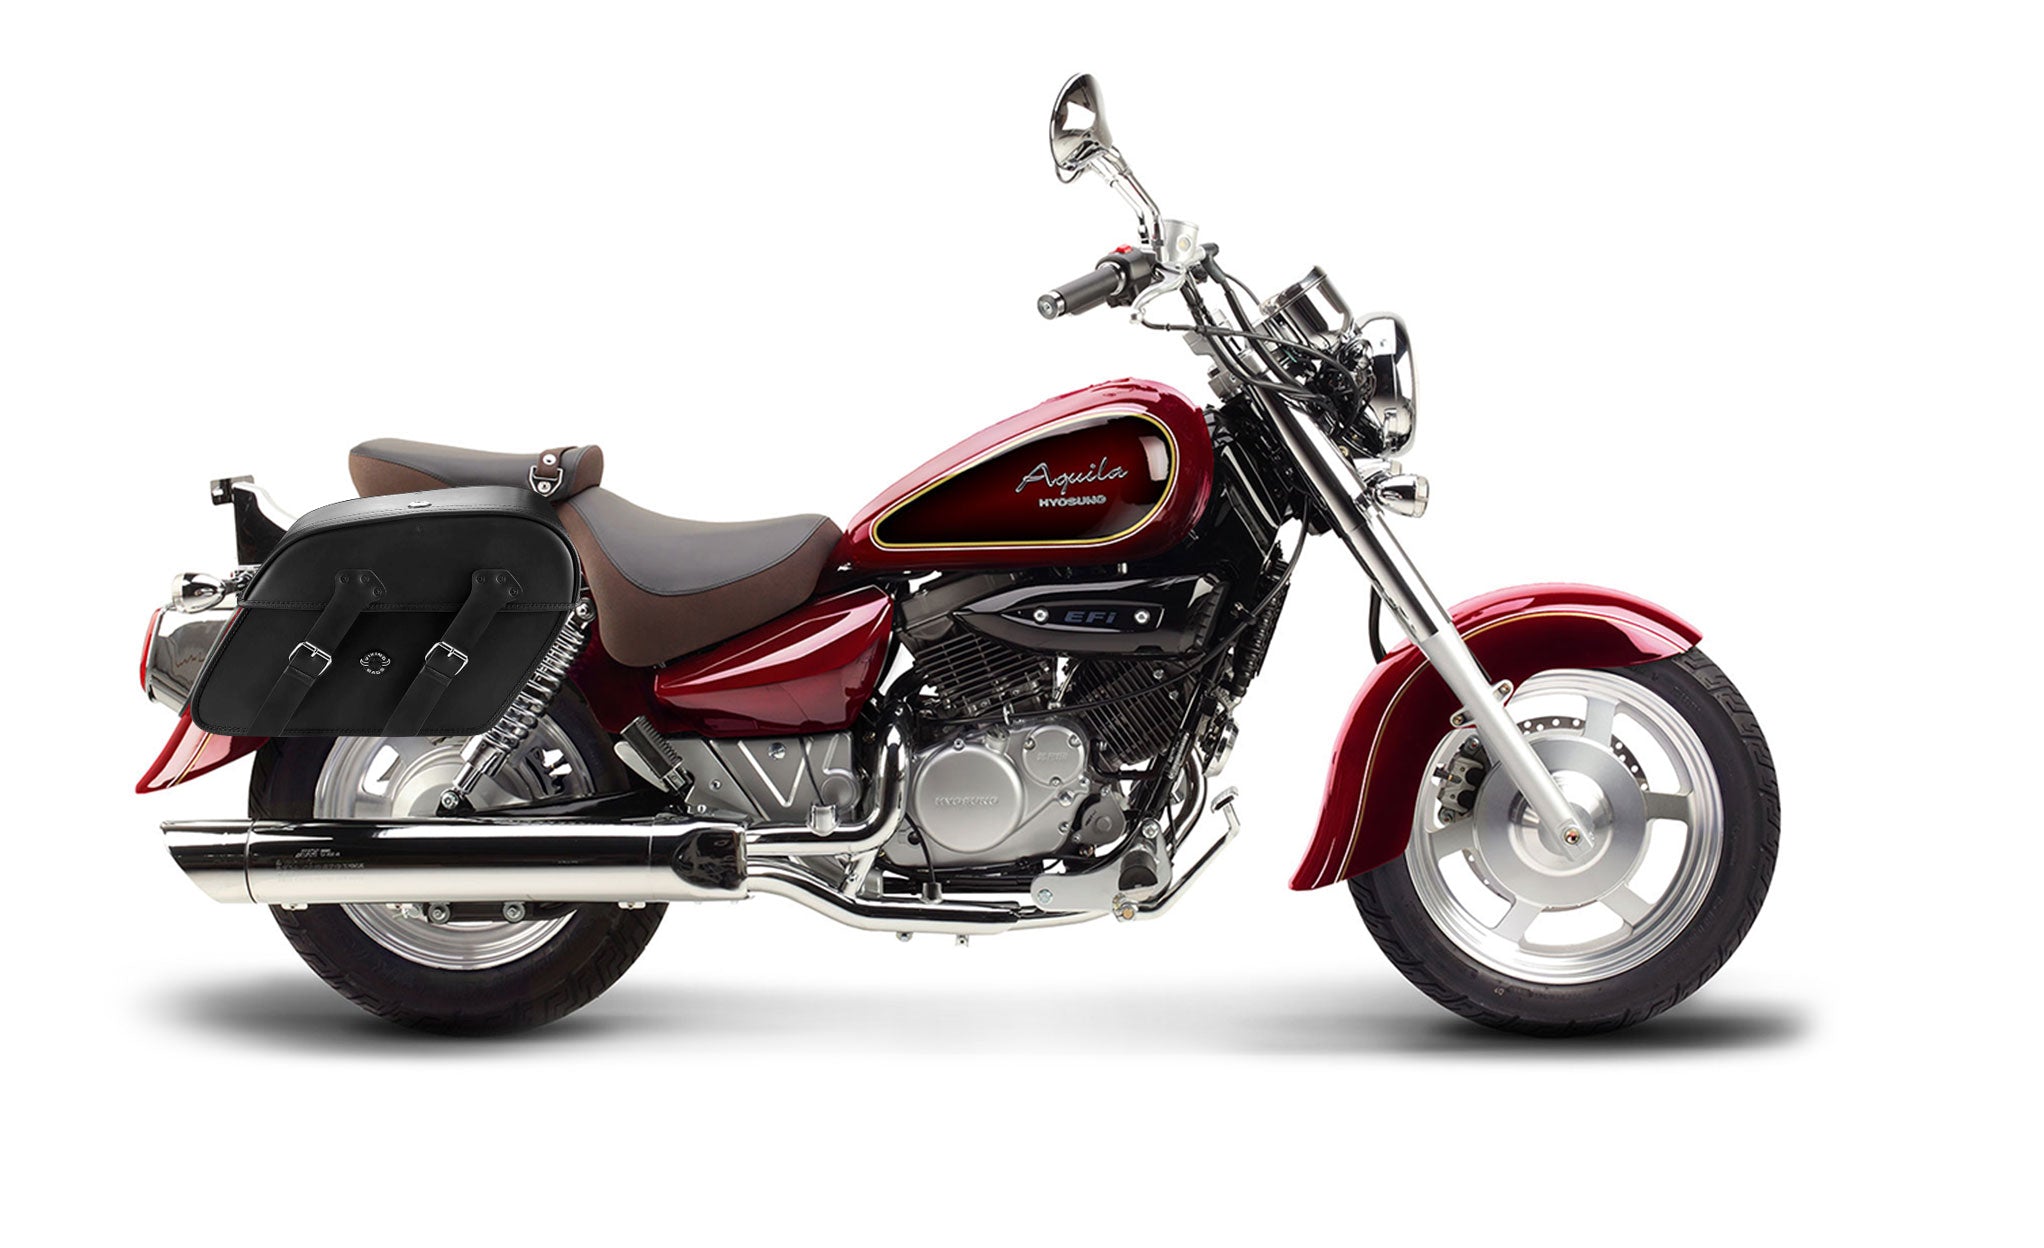 Viking Raven Extra Large Hyosung Aquila Gv 250 Leather Motorcycle Saddlebags on Bike Photo @expand